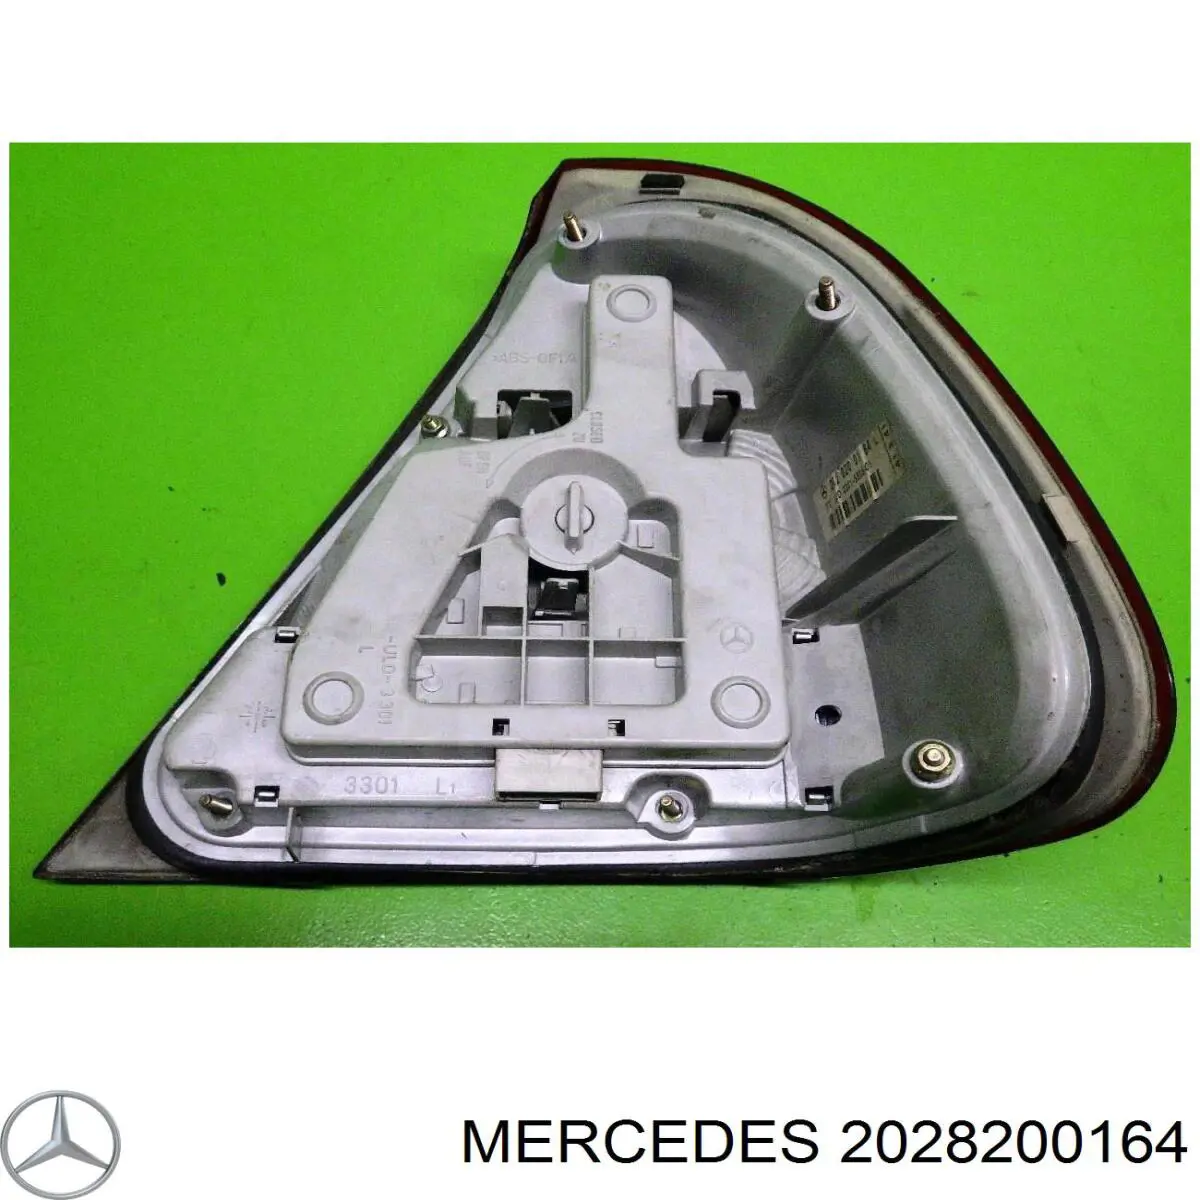 2028200164 Mercedes piloto posterior izquierdo